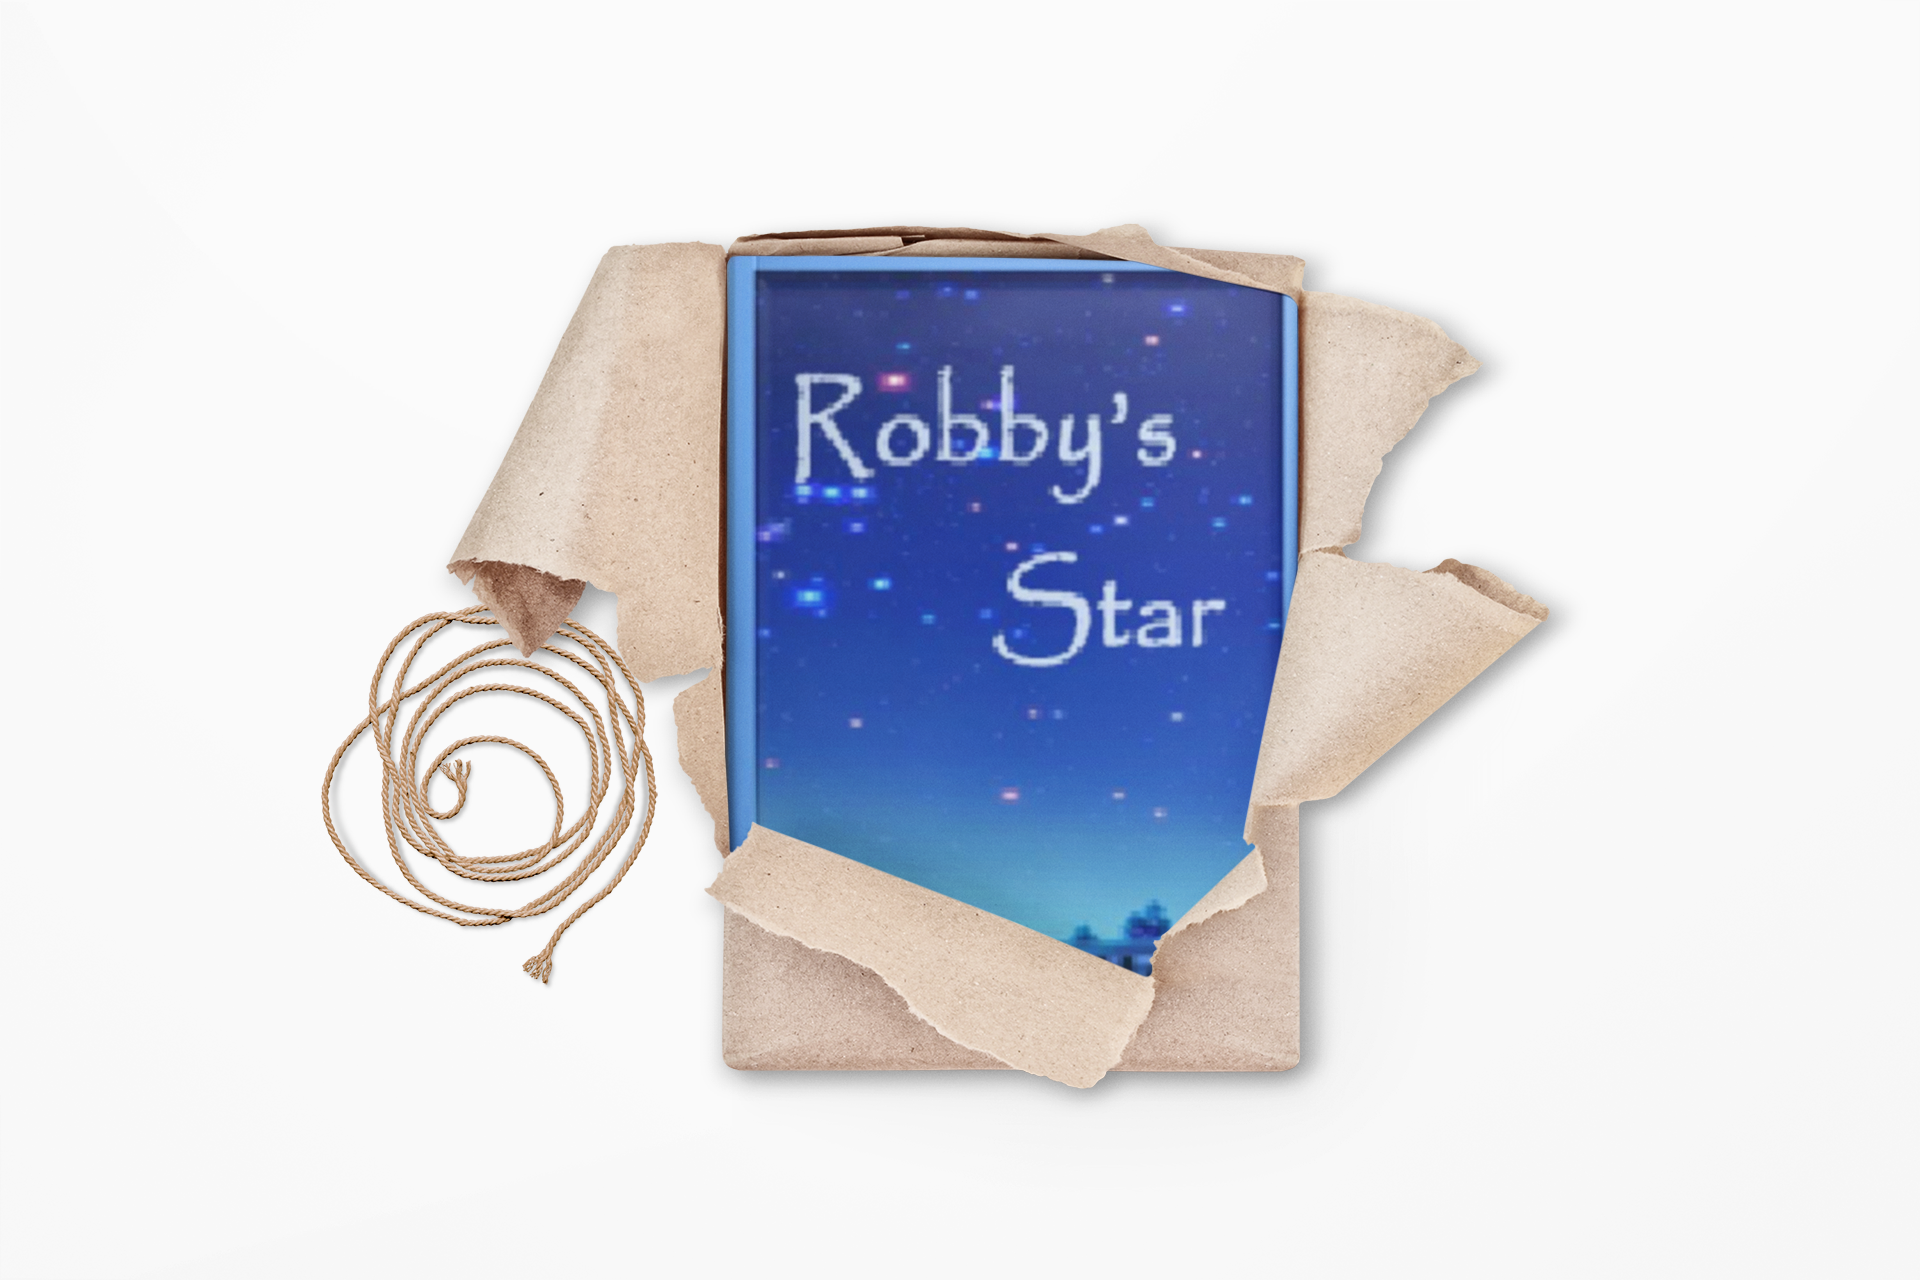 Robby's Star